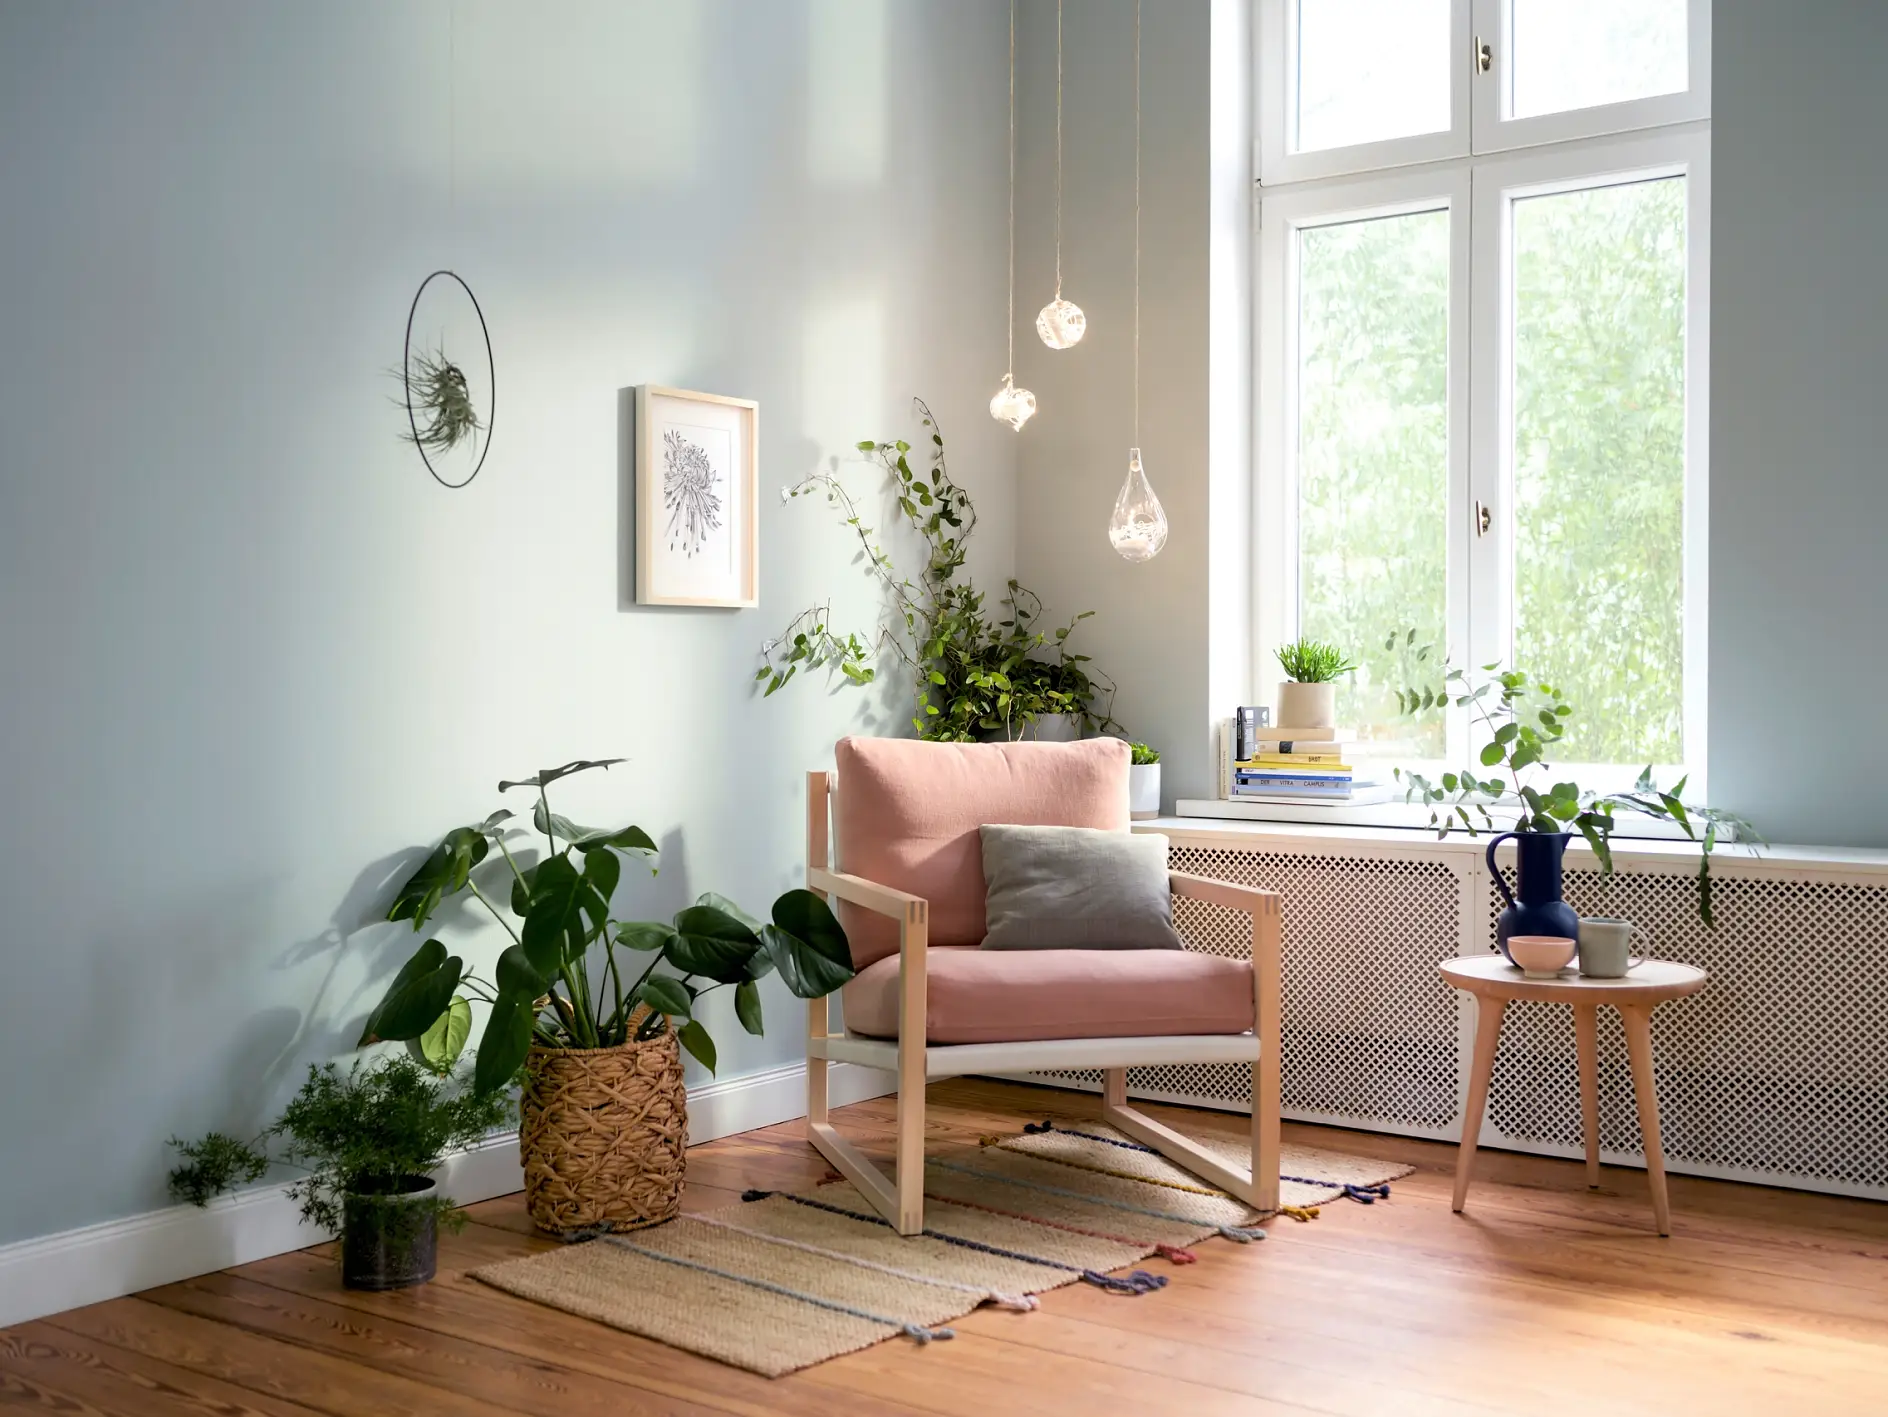 Wohnzimmer-Highlights – Teaser: Wohnzimmerecke mit Sessel, Pflanzen, Licht